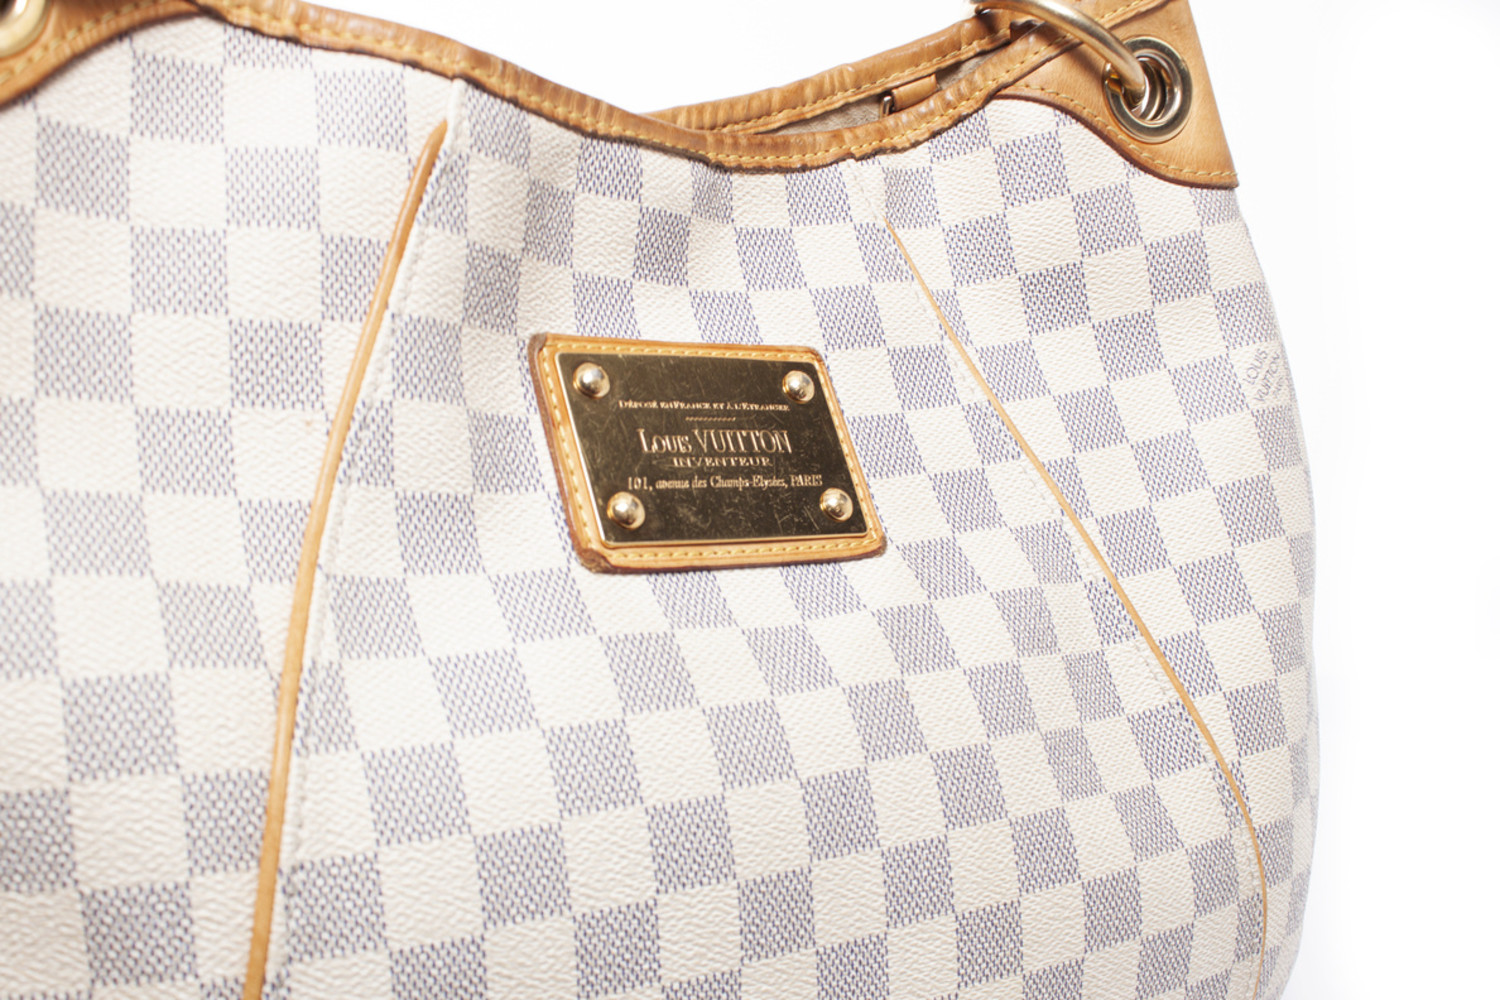 Louis Vuitton Galleria Pm Azur Damier Inventeur Hobo Bag. Hobo